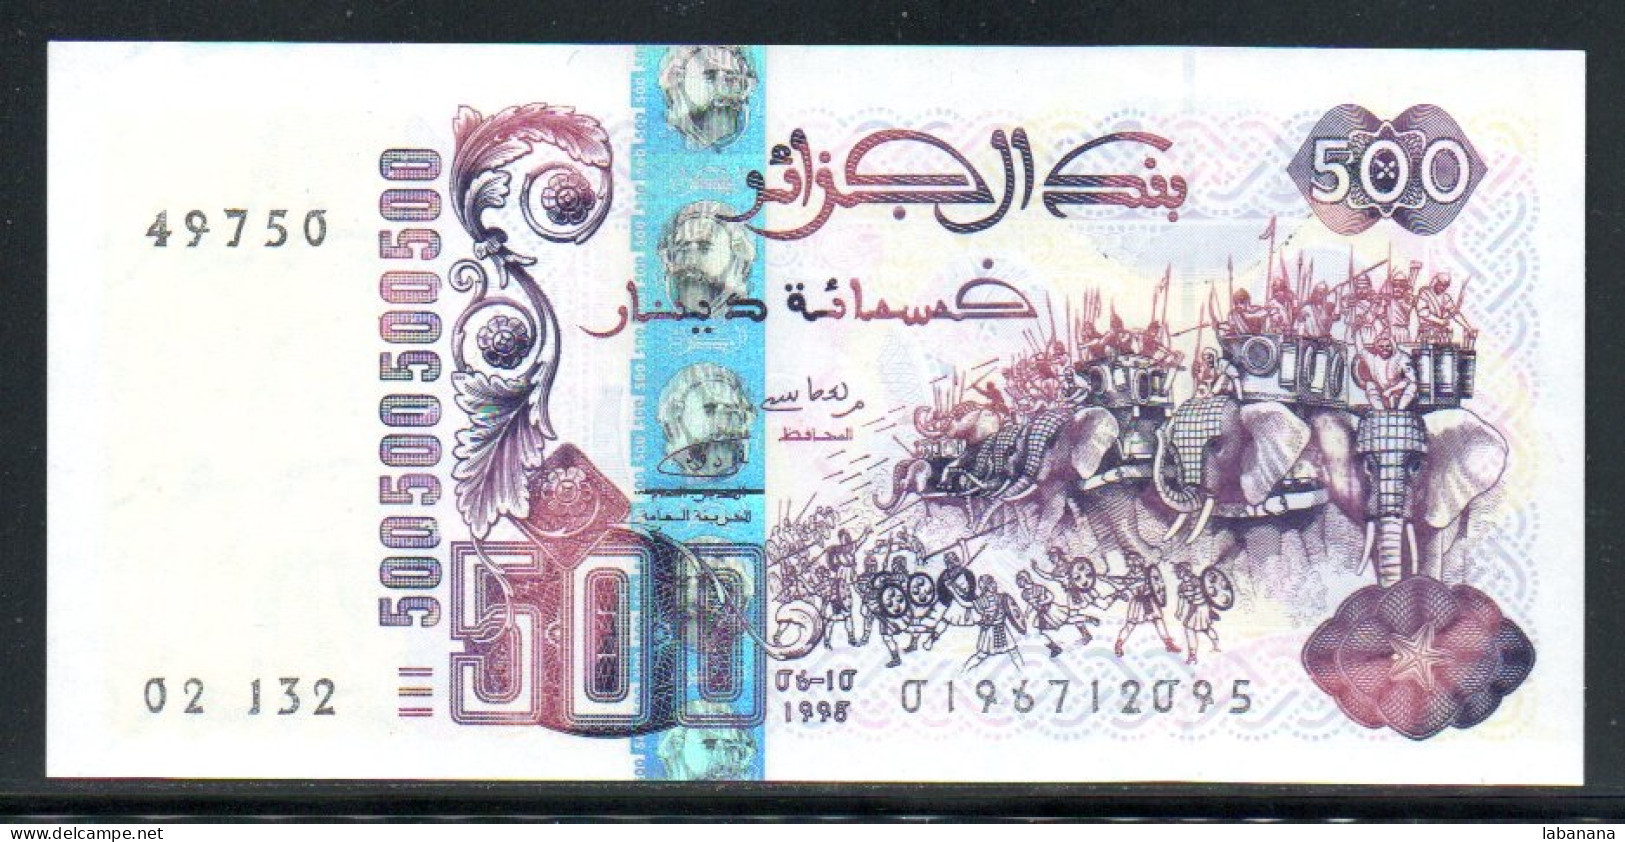 685-Algérie 500 Dinars 1998 02-132 Neuf/unc - Algerien